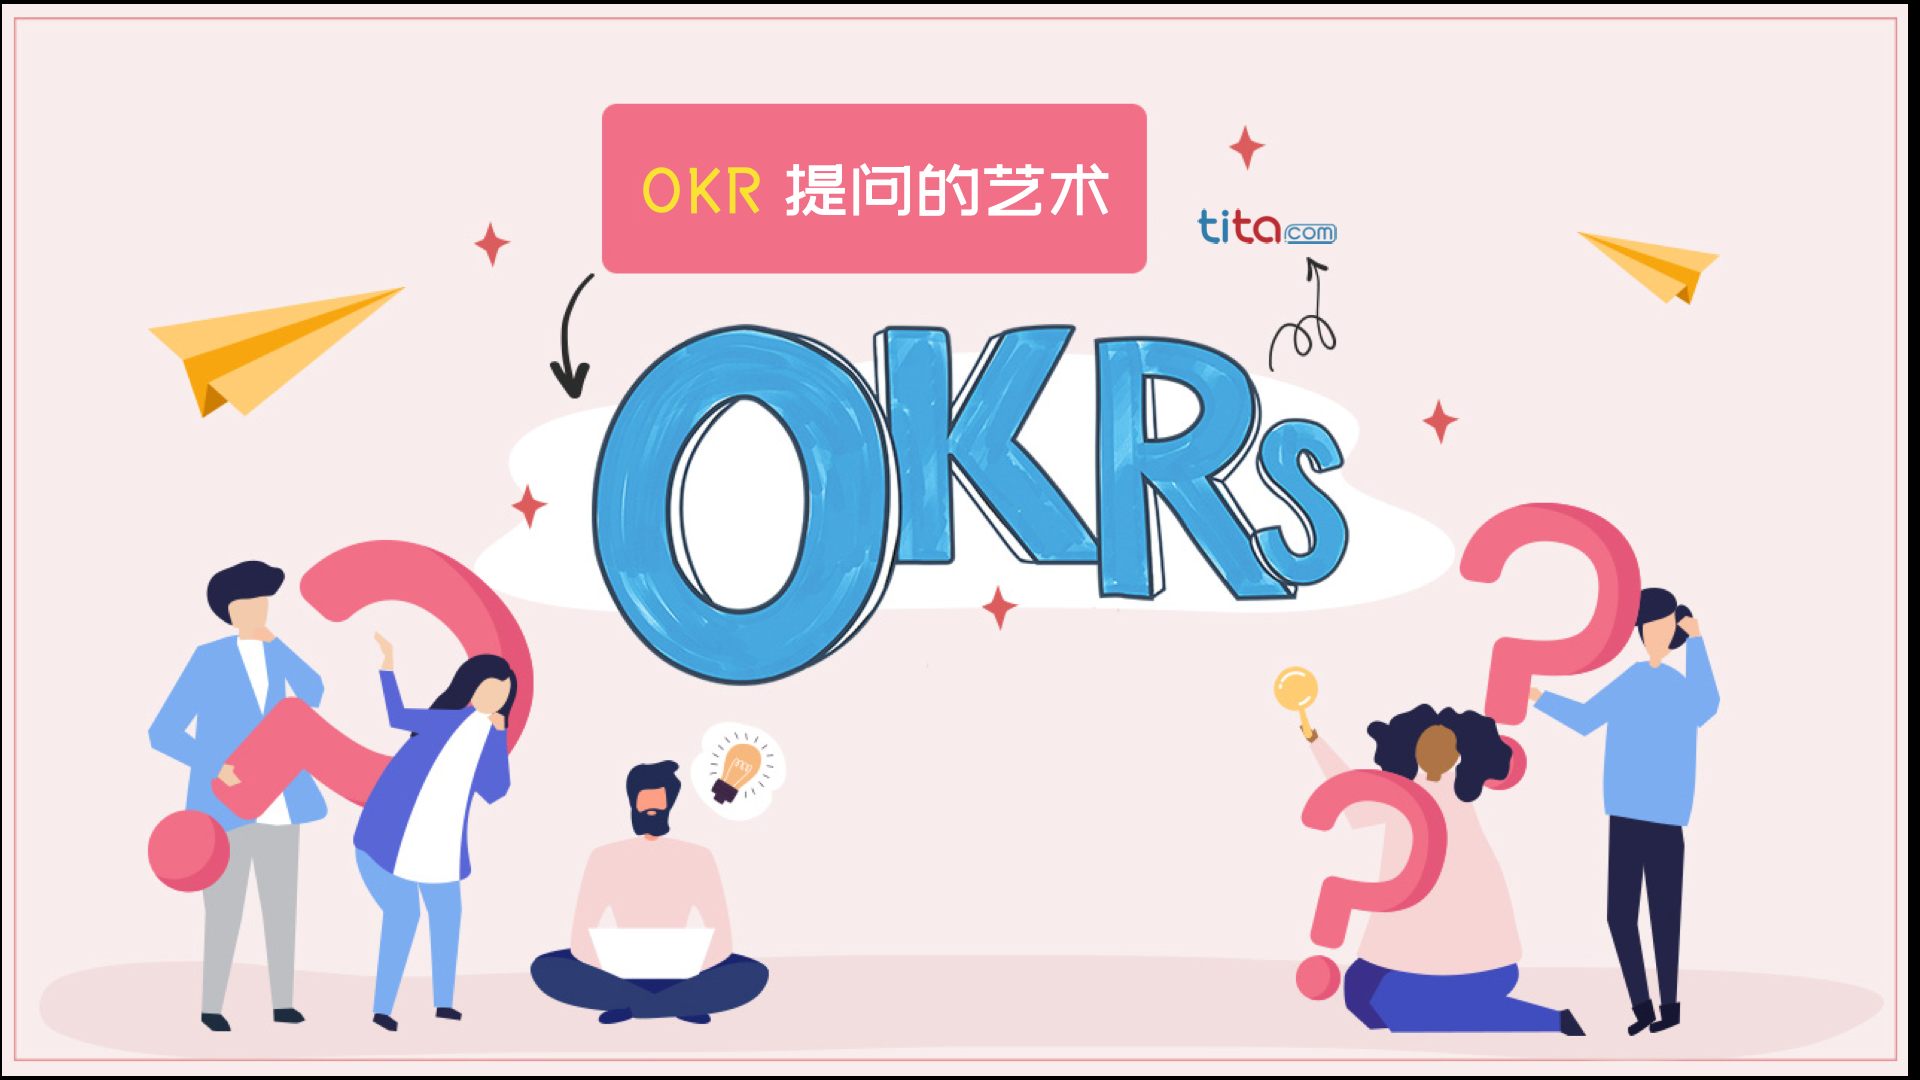 设计师团队 OKR 案例库